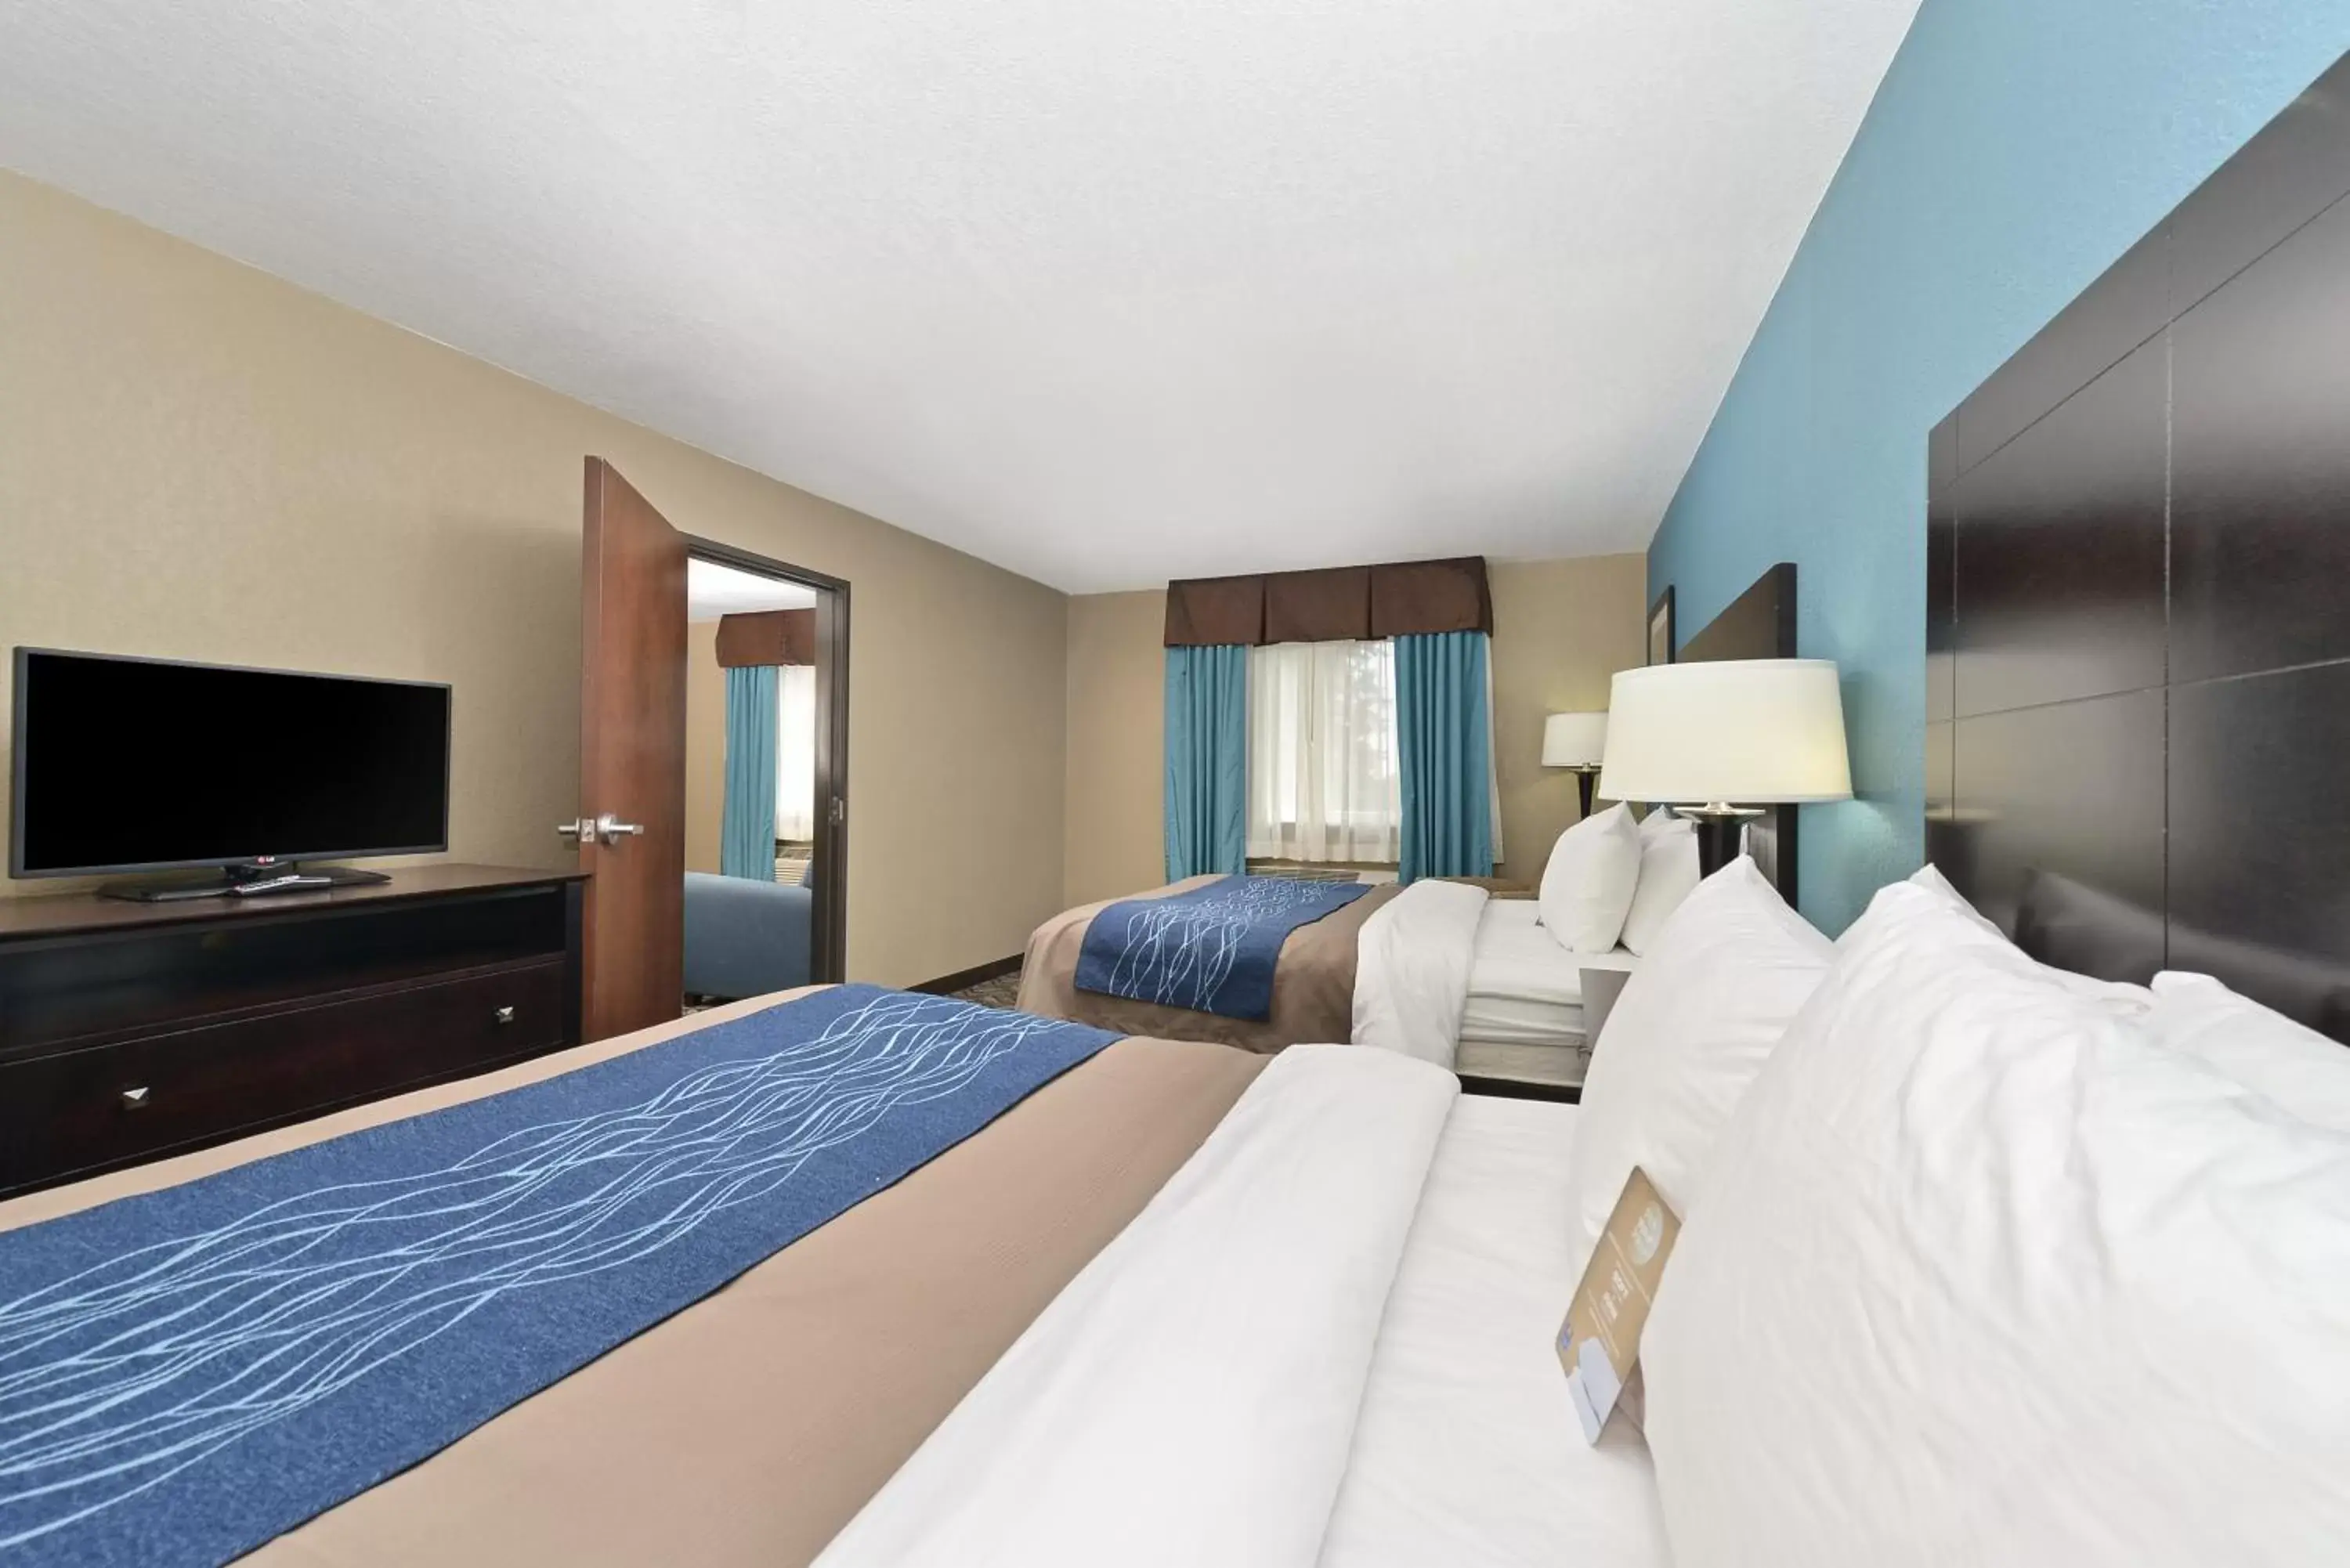 Bedroom, Bed in Comfort Inn & Suites Springfield I-55